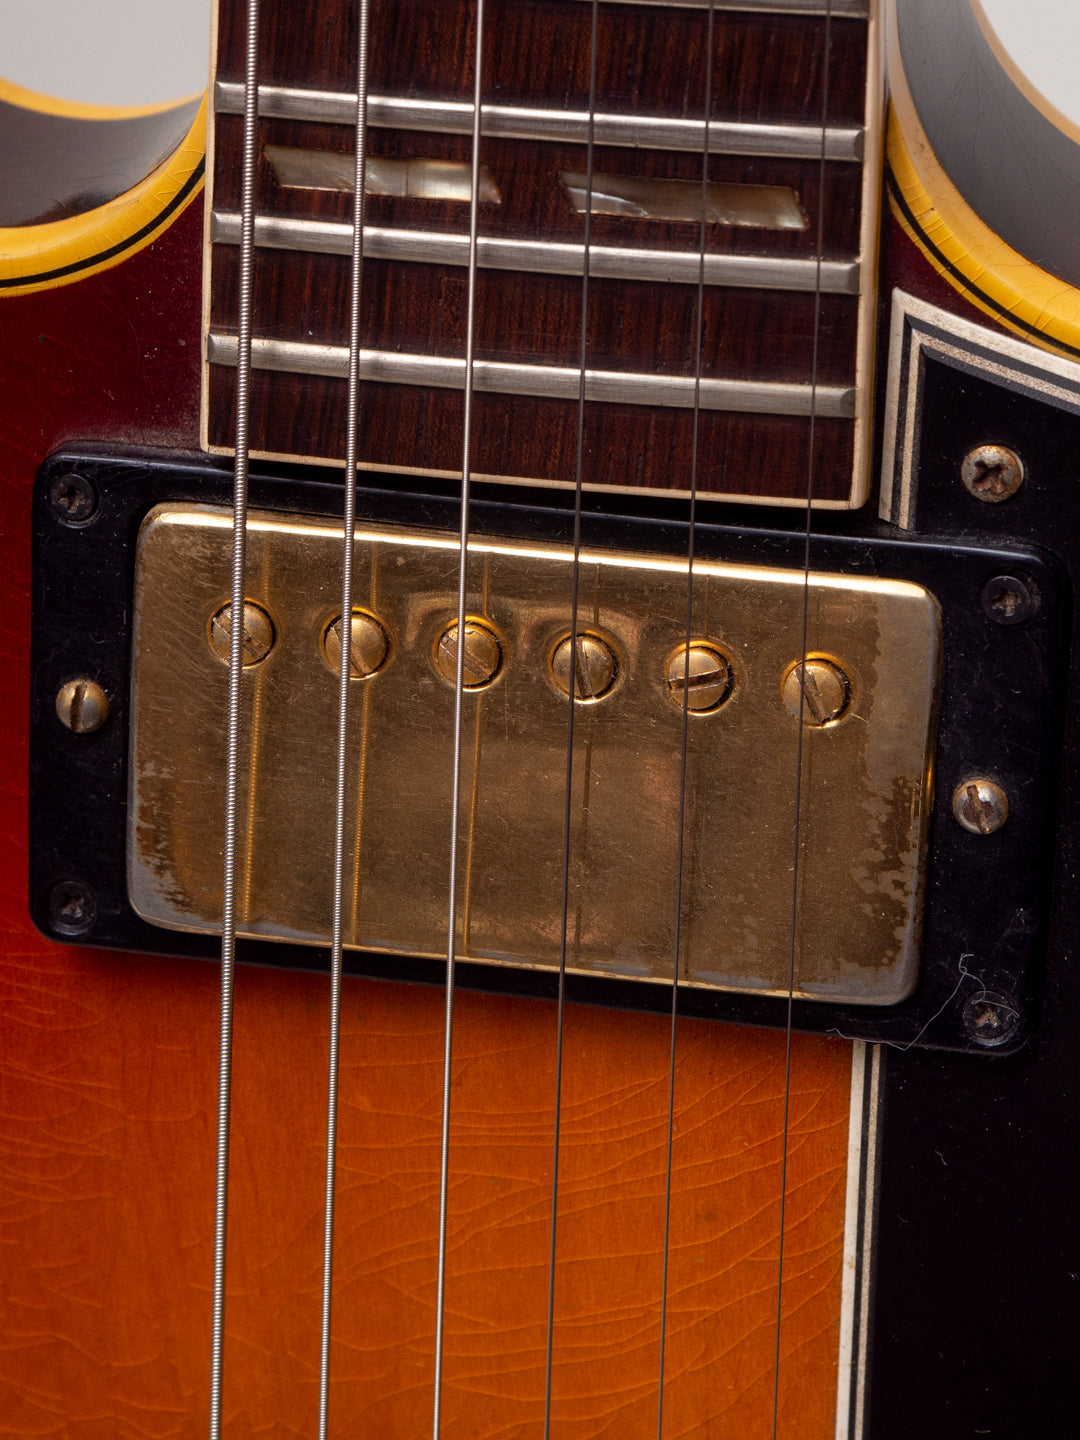 1965 Gibson ES-345